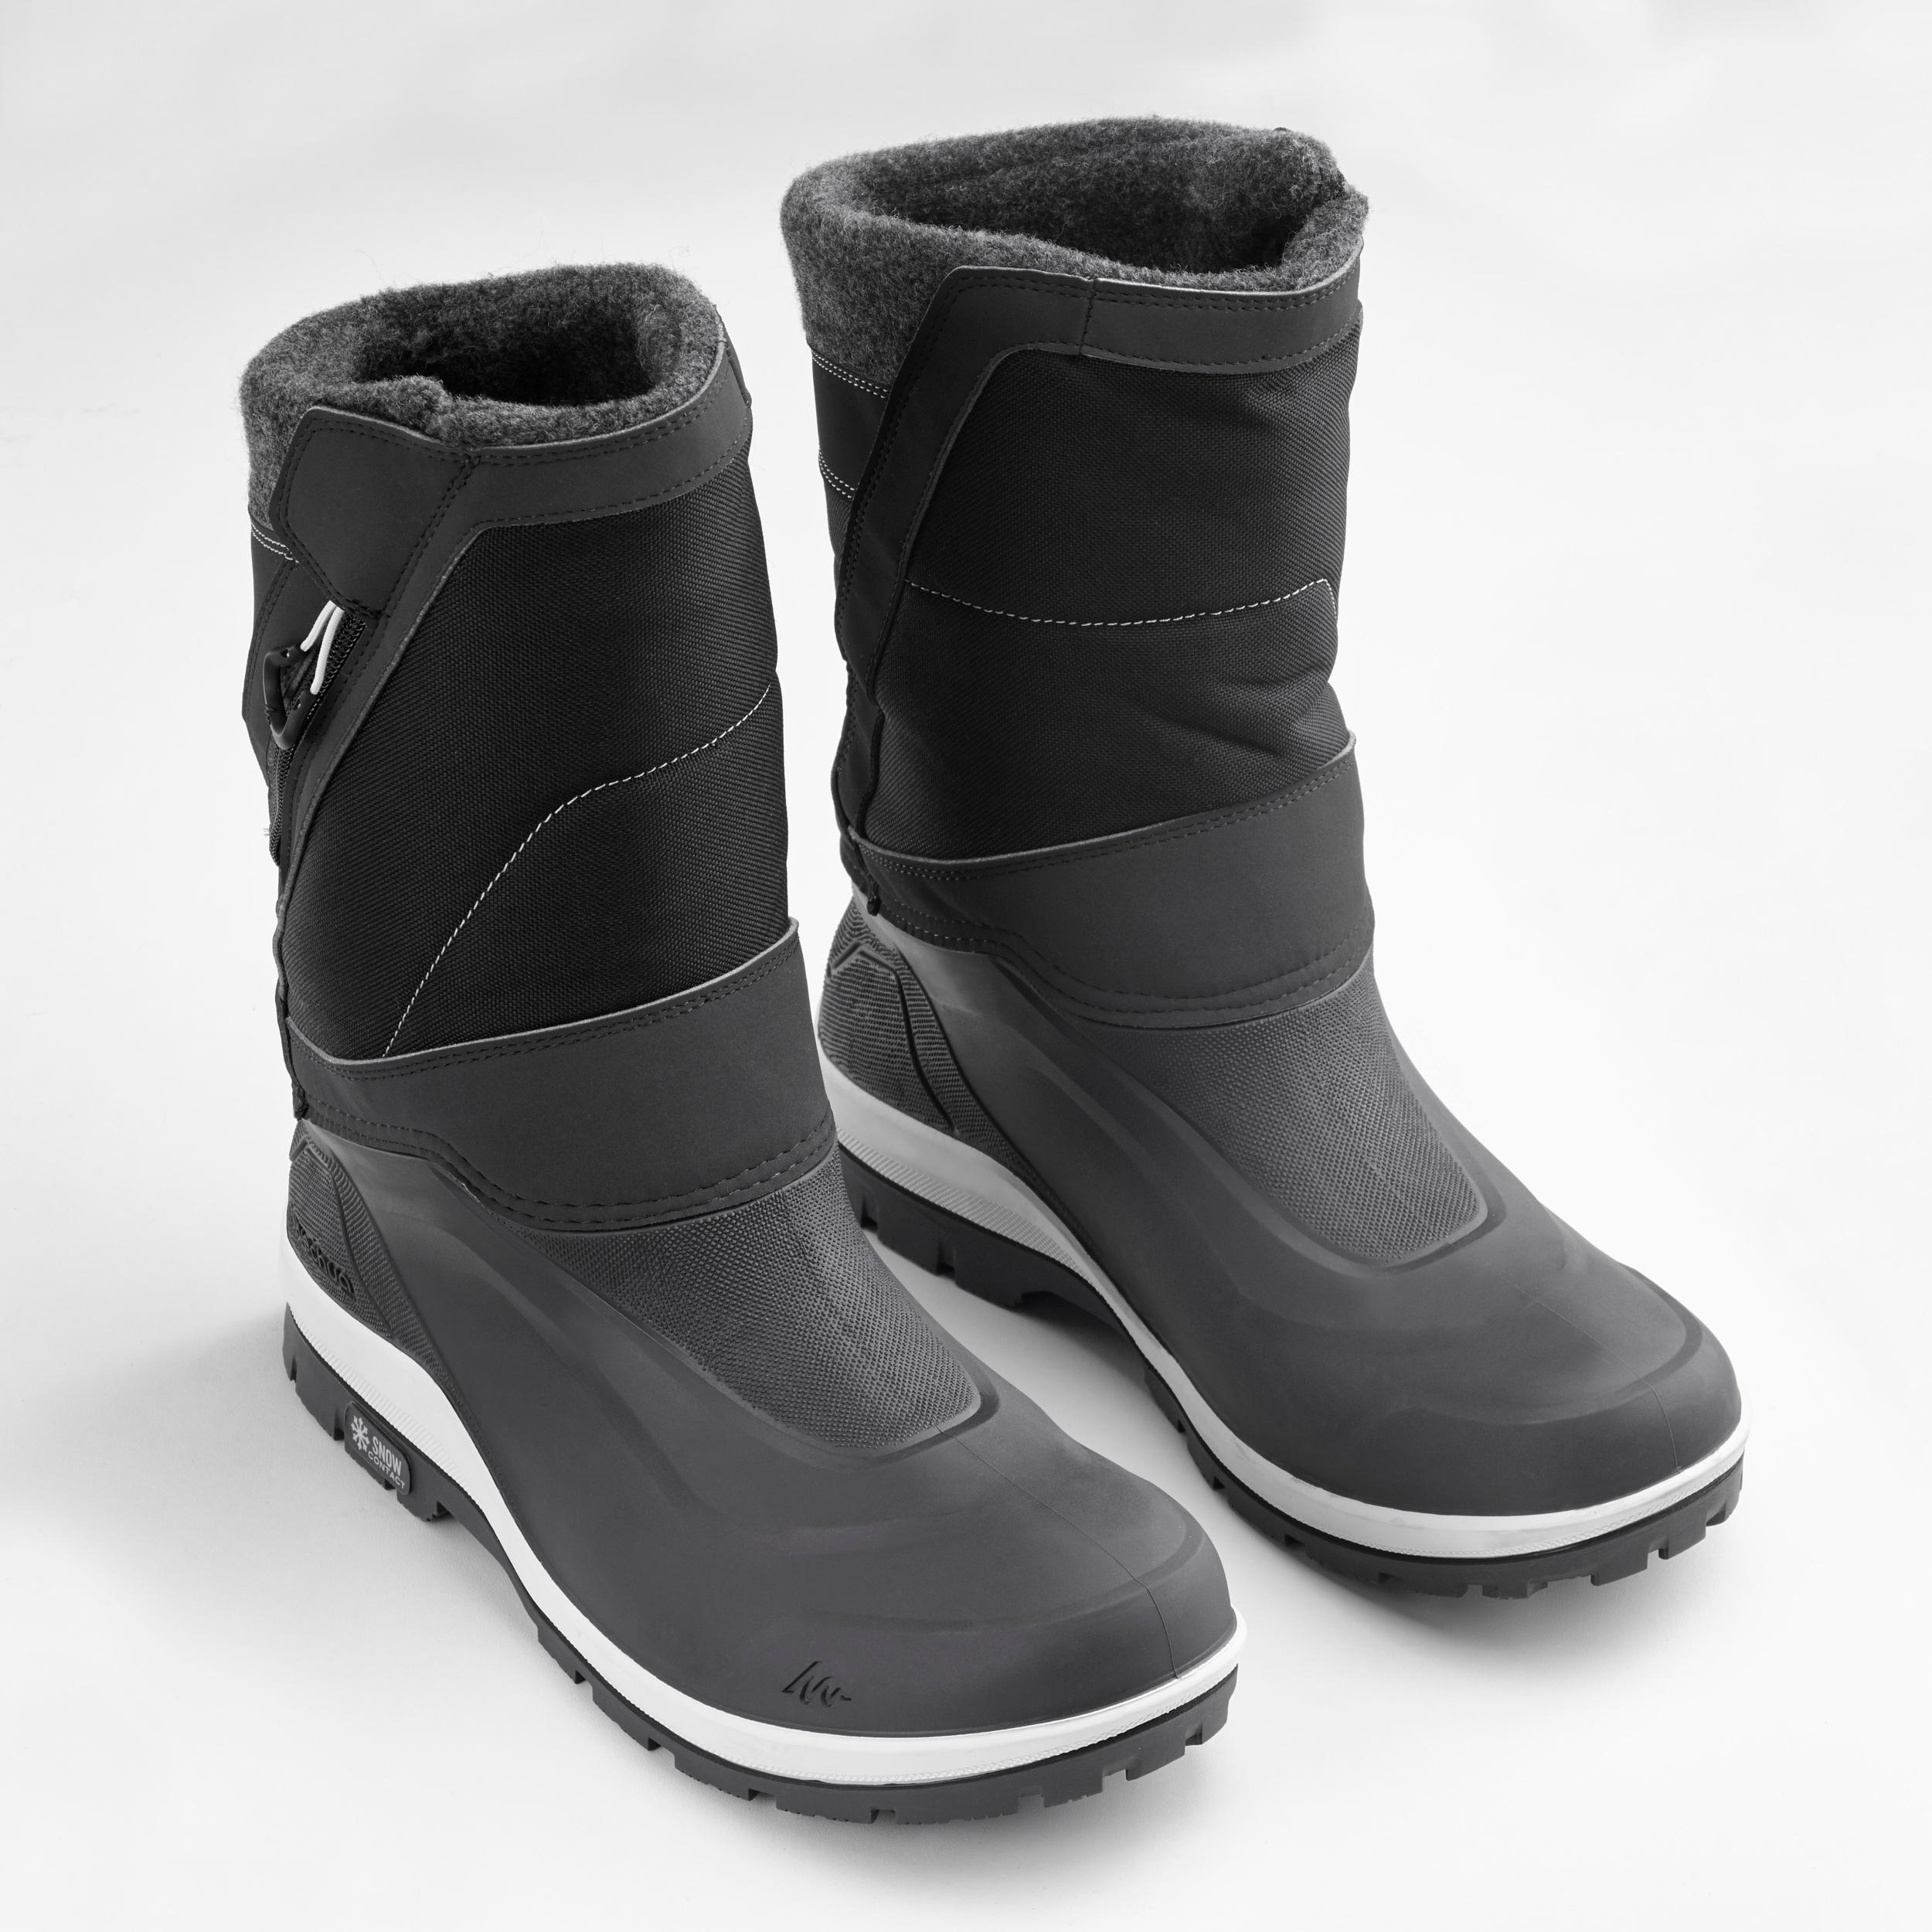 waterproof warm boots